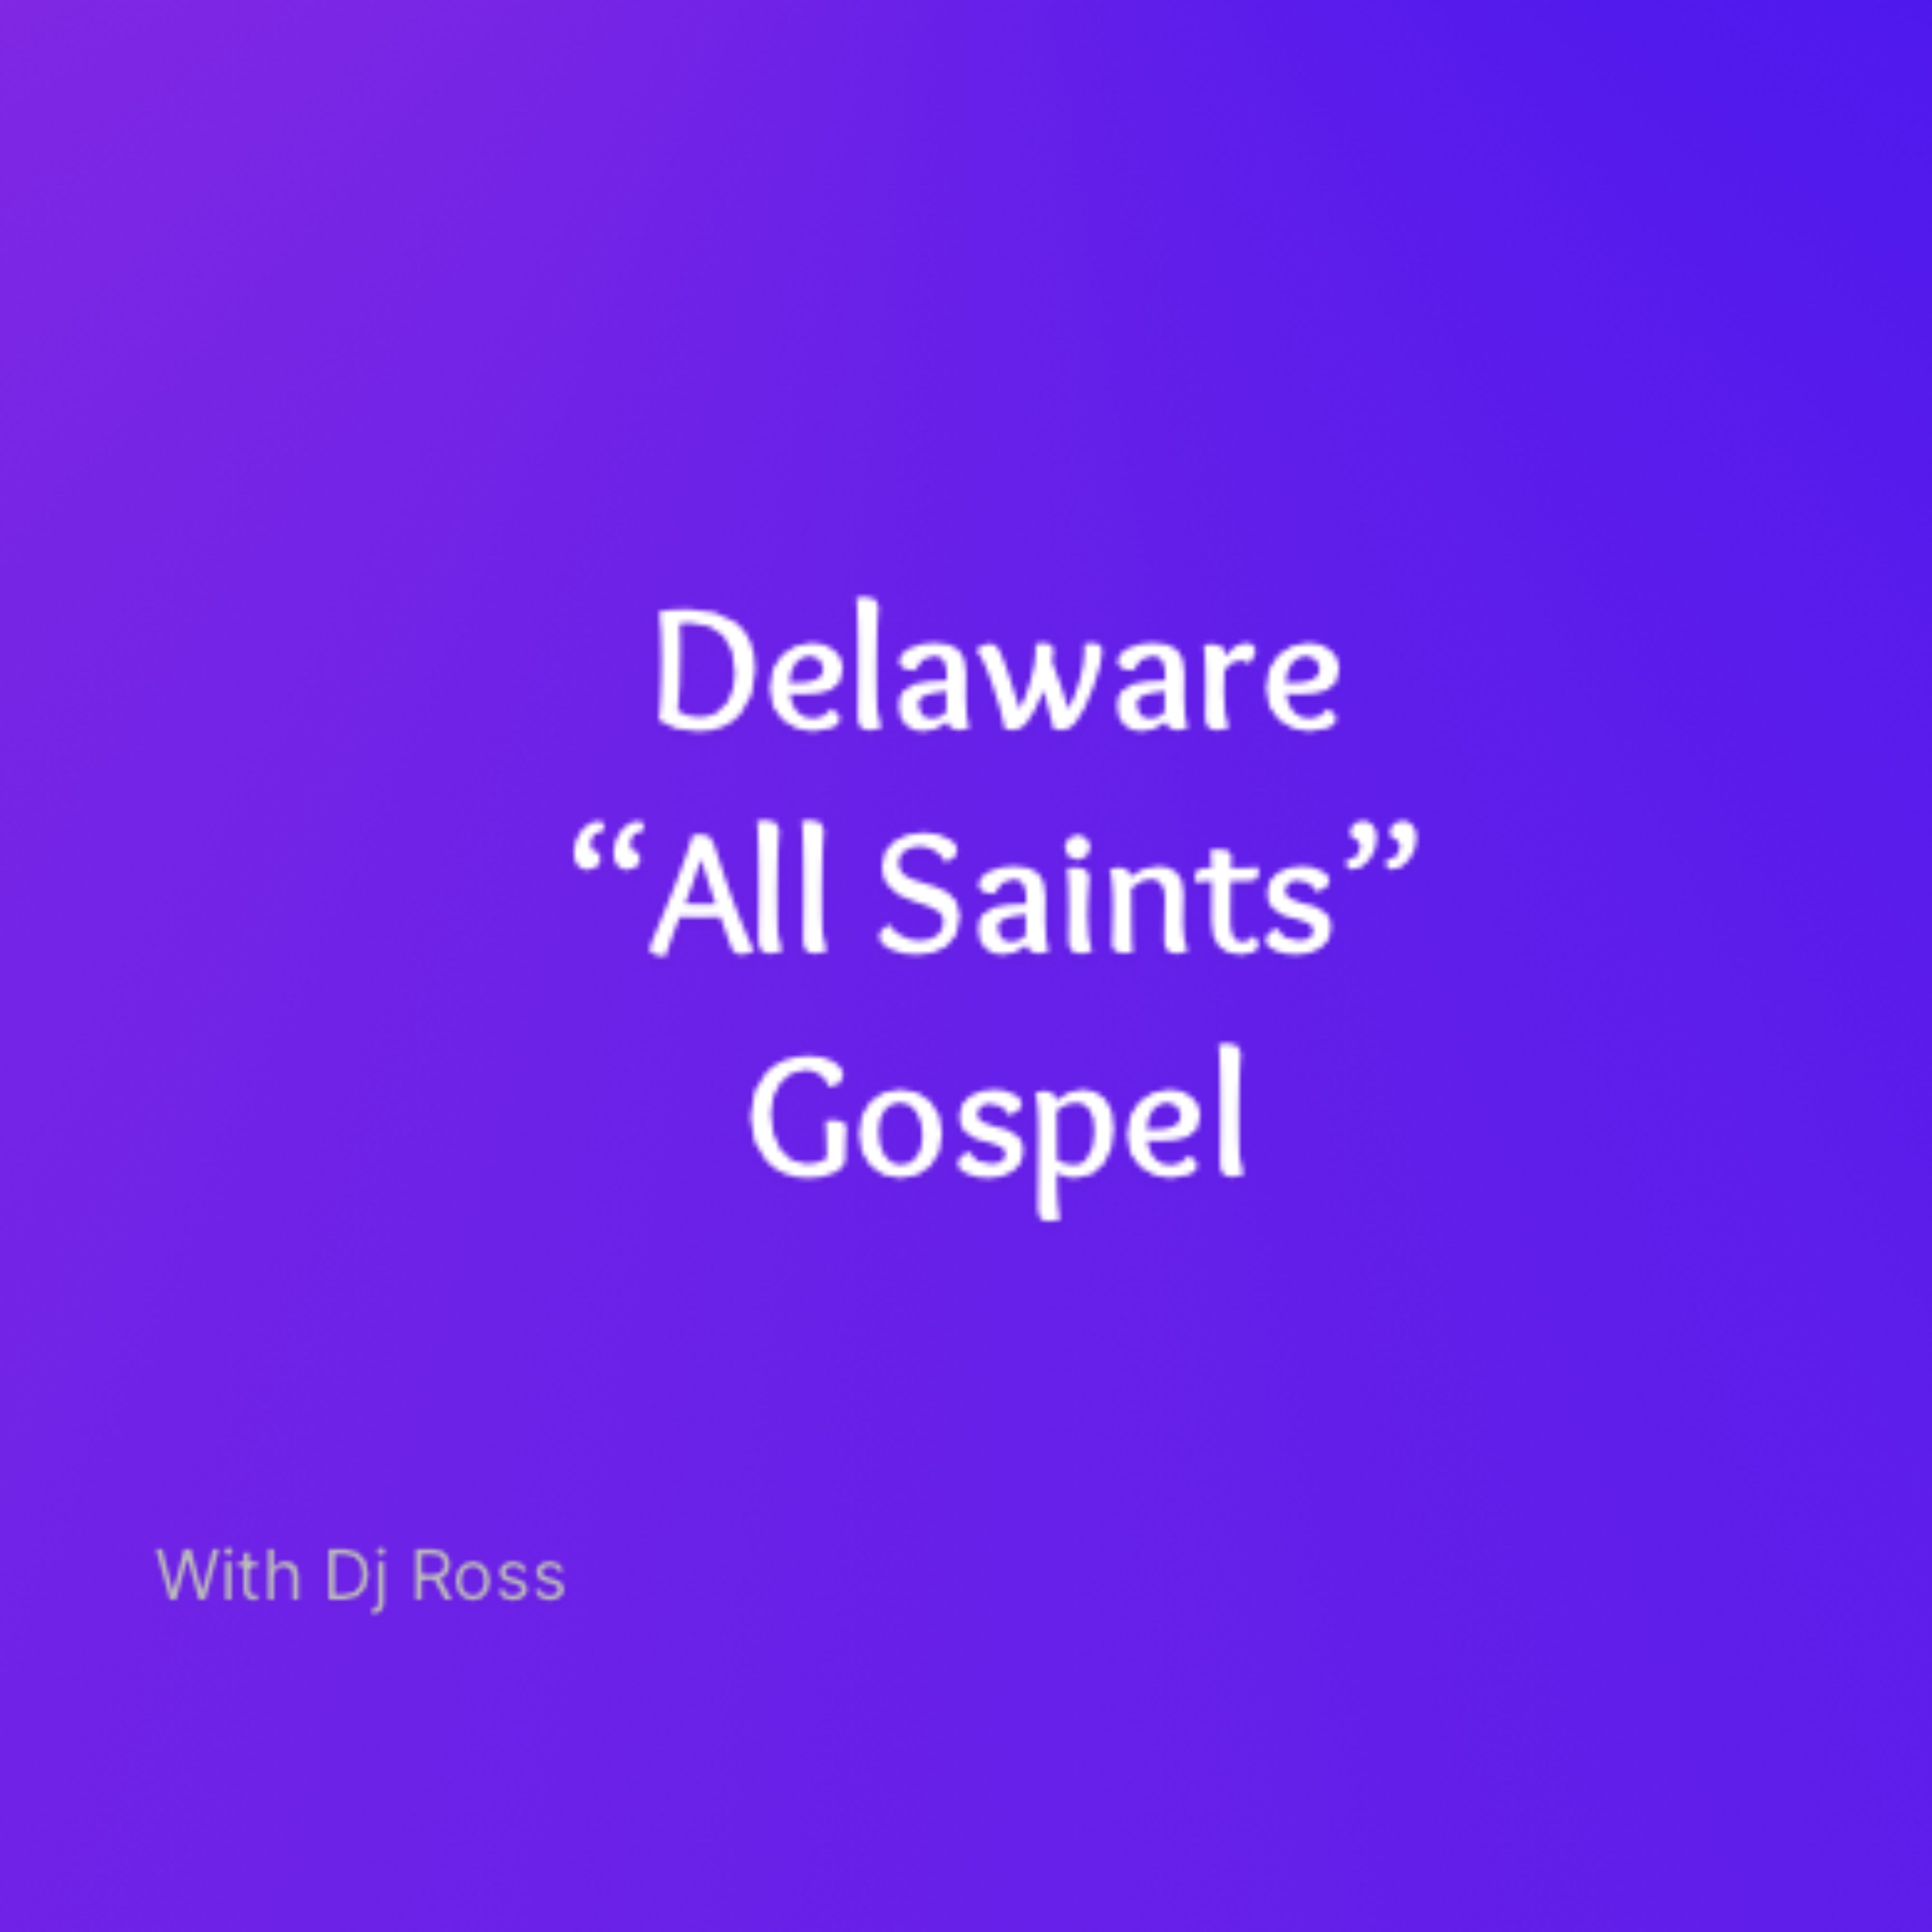 Delaware “All Saints” Gospel